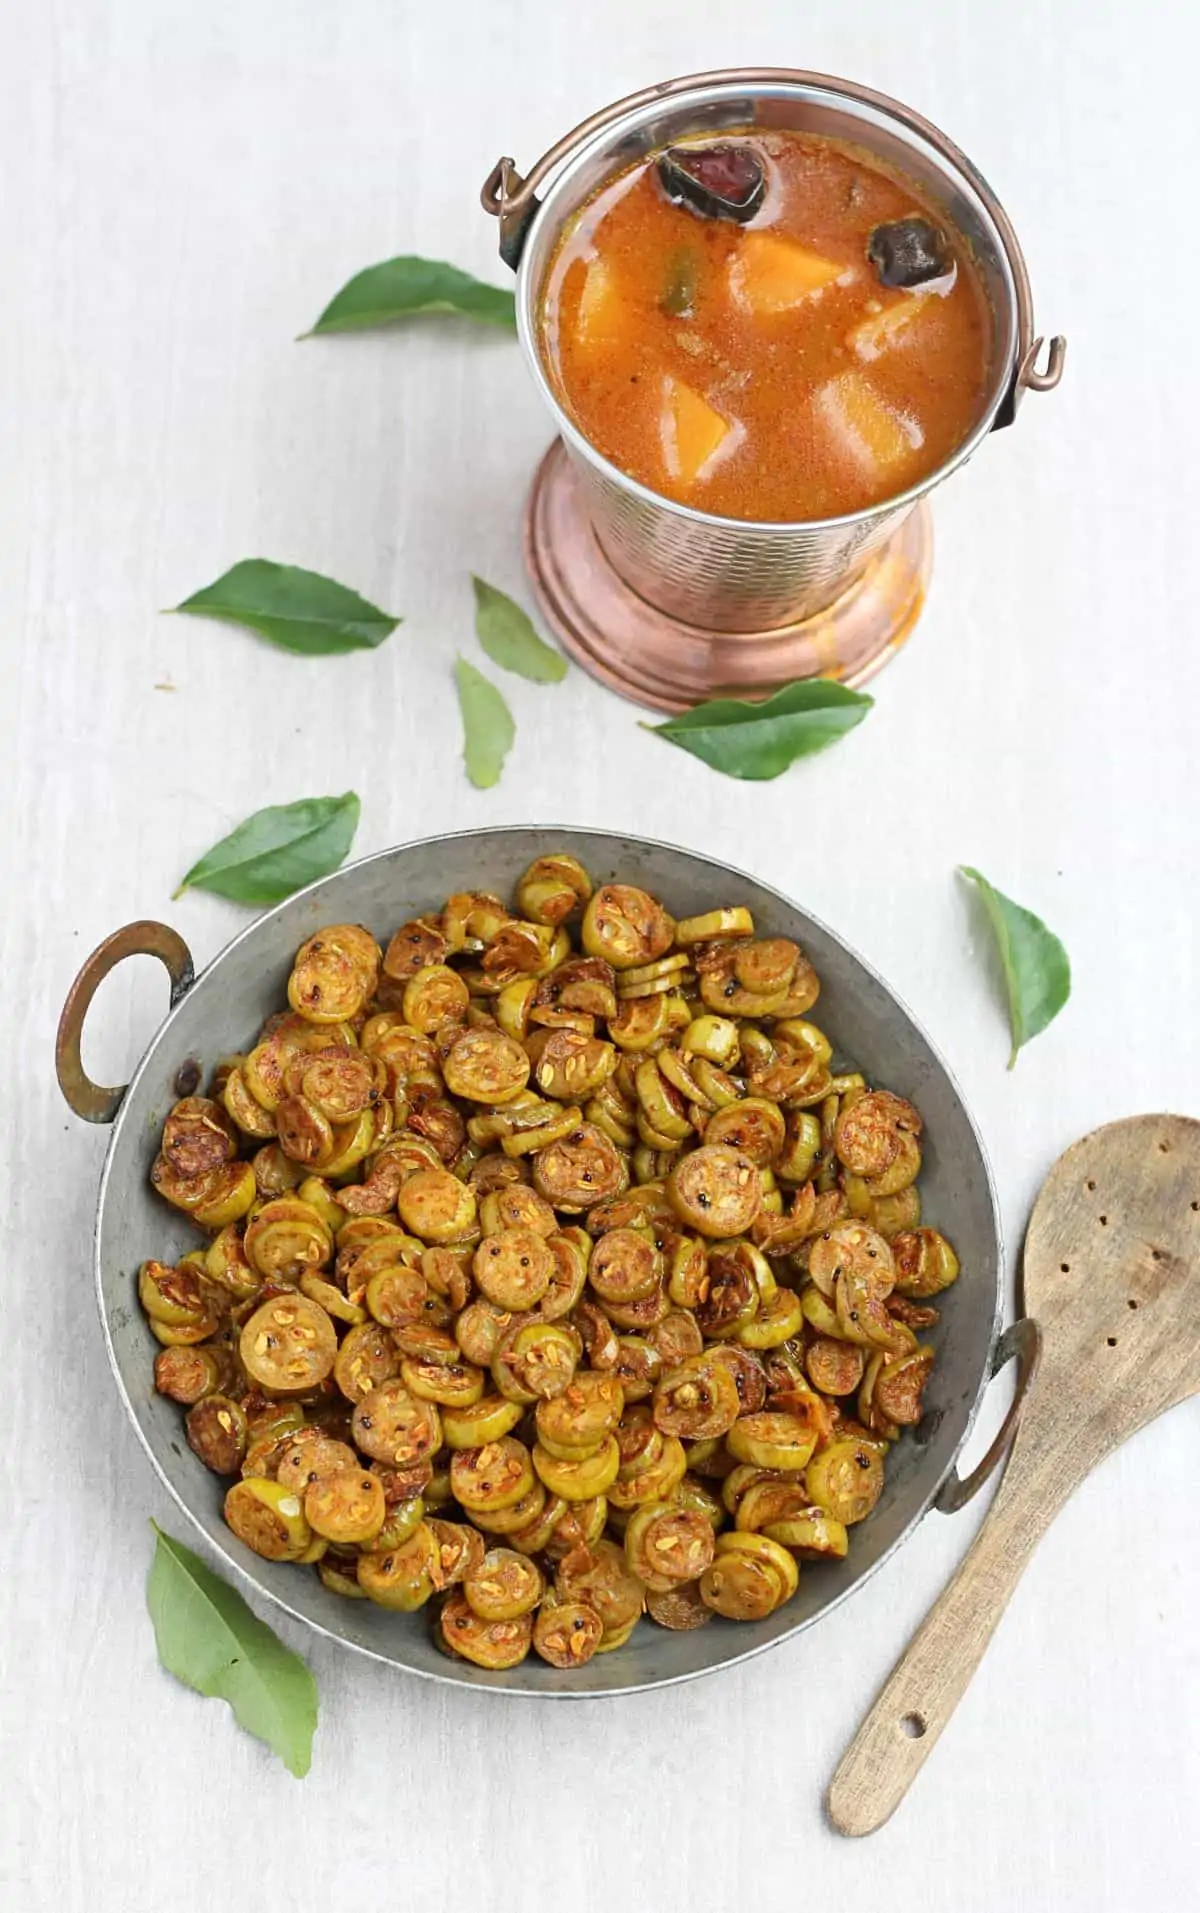 kovakkai curry in a bowl